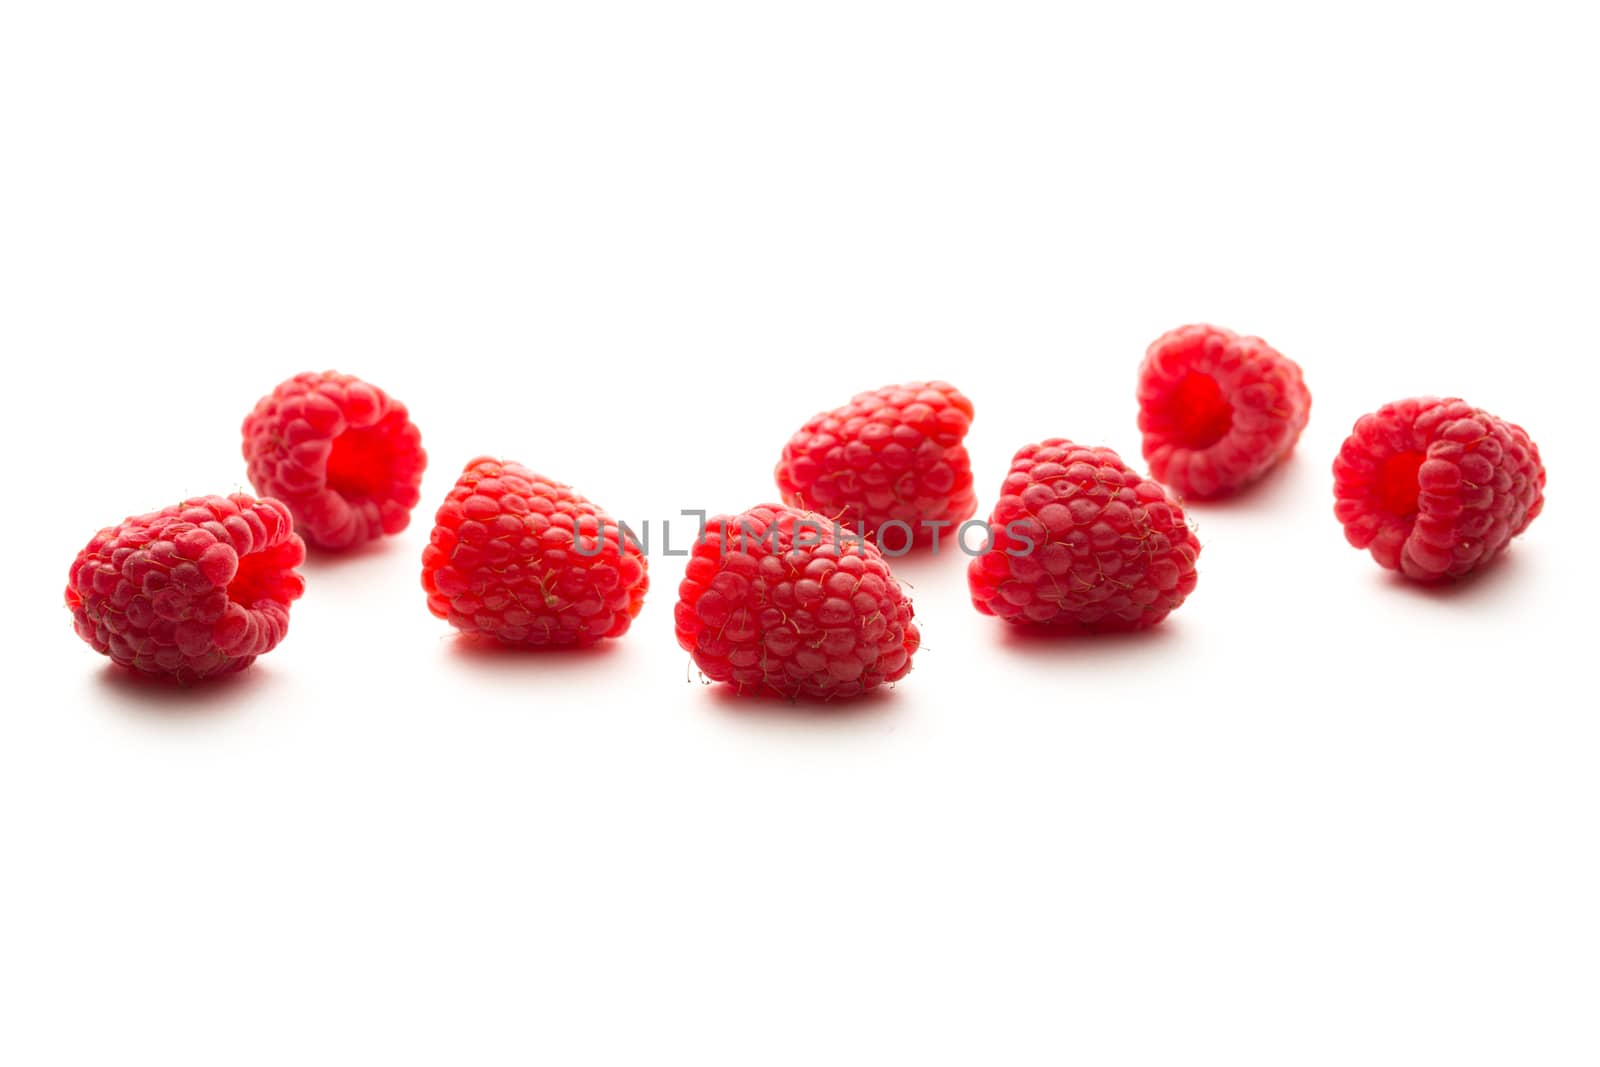 Fresh raspberry on white background by Garsya